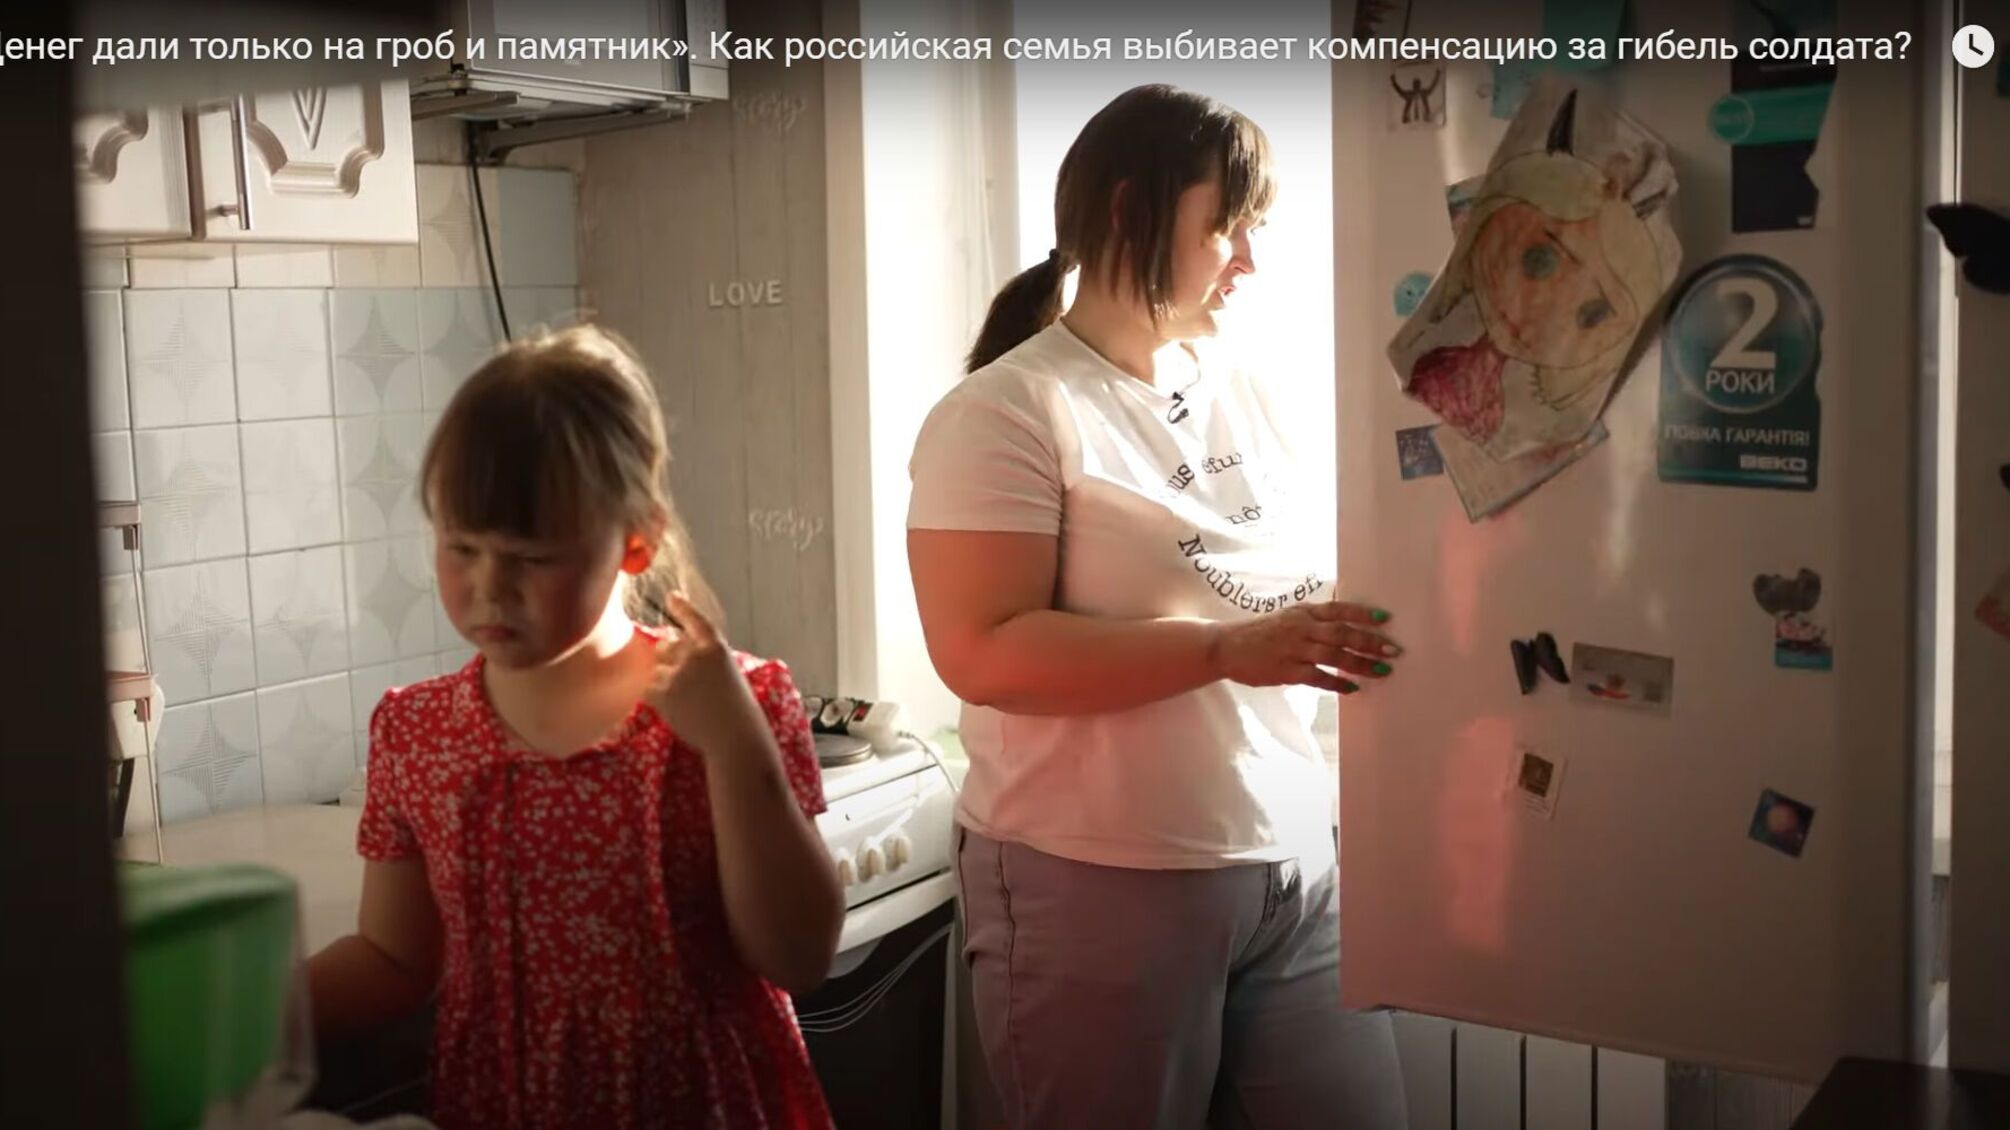 жена убитого российского оккупанта жалуется на невыплату компенсаций